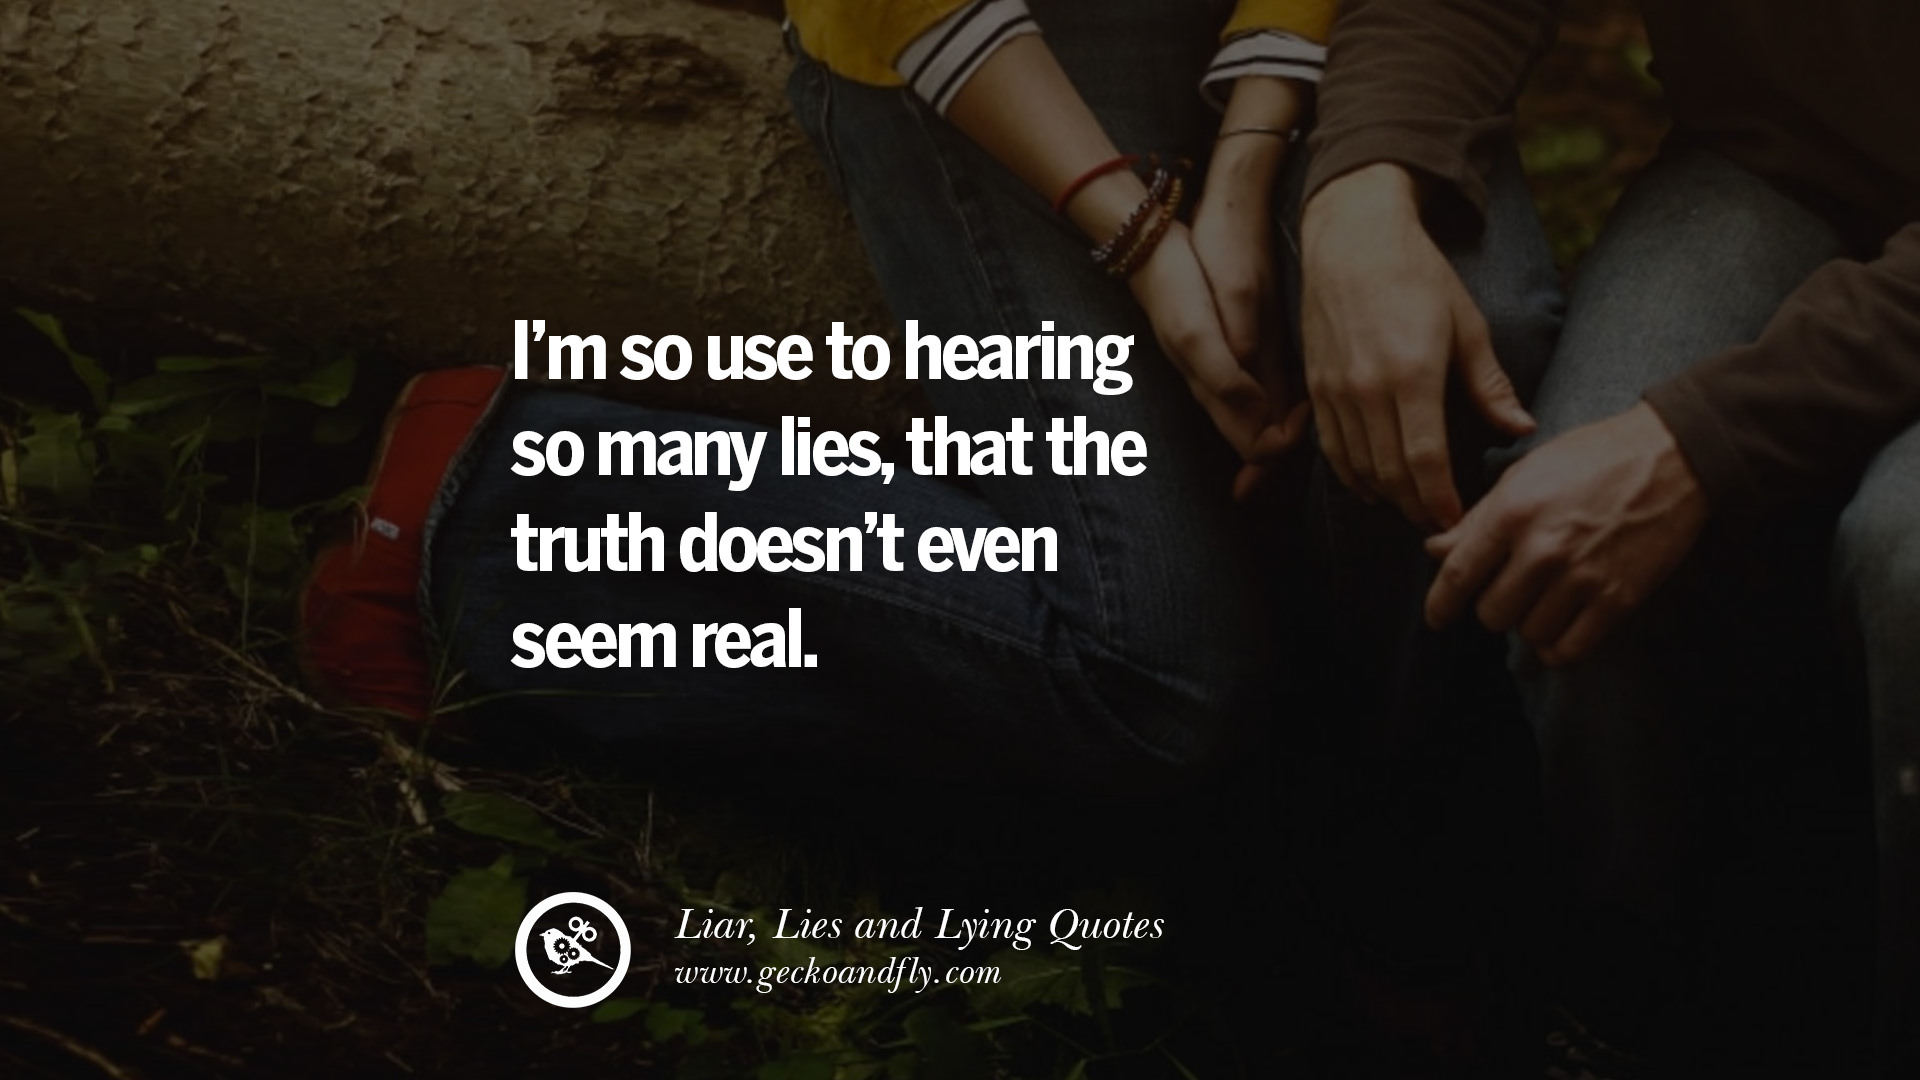 Kutipan tentang pembohong, kebohongan, dan pacar yang suka berbohong dalam sebuah hubungan